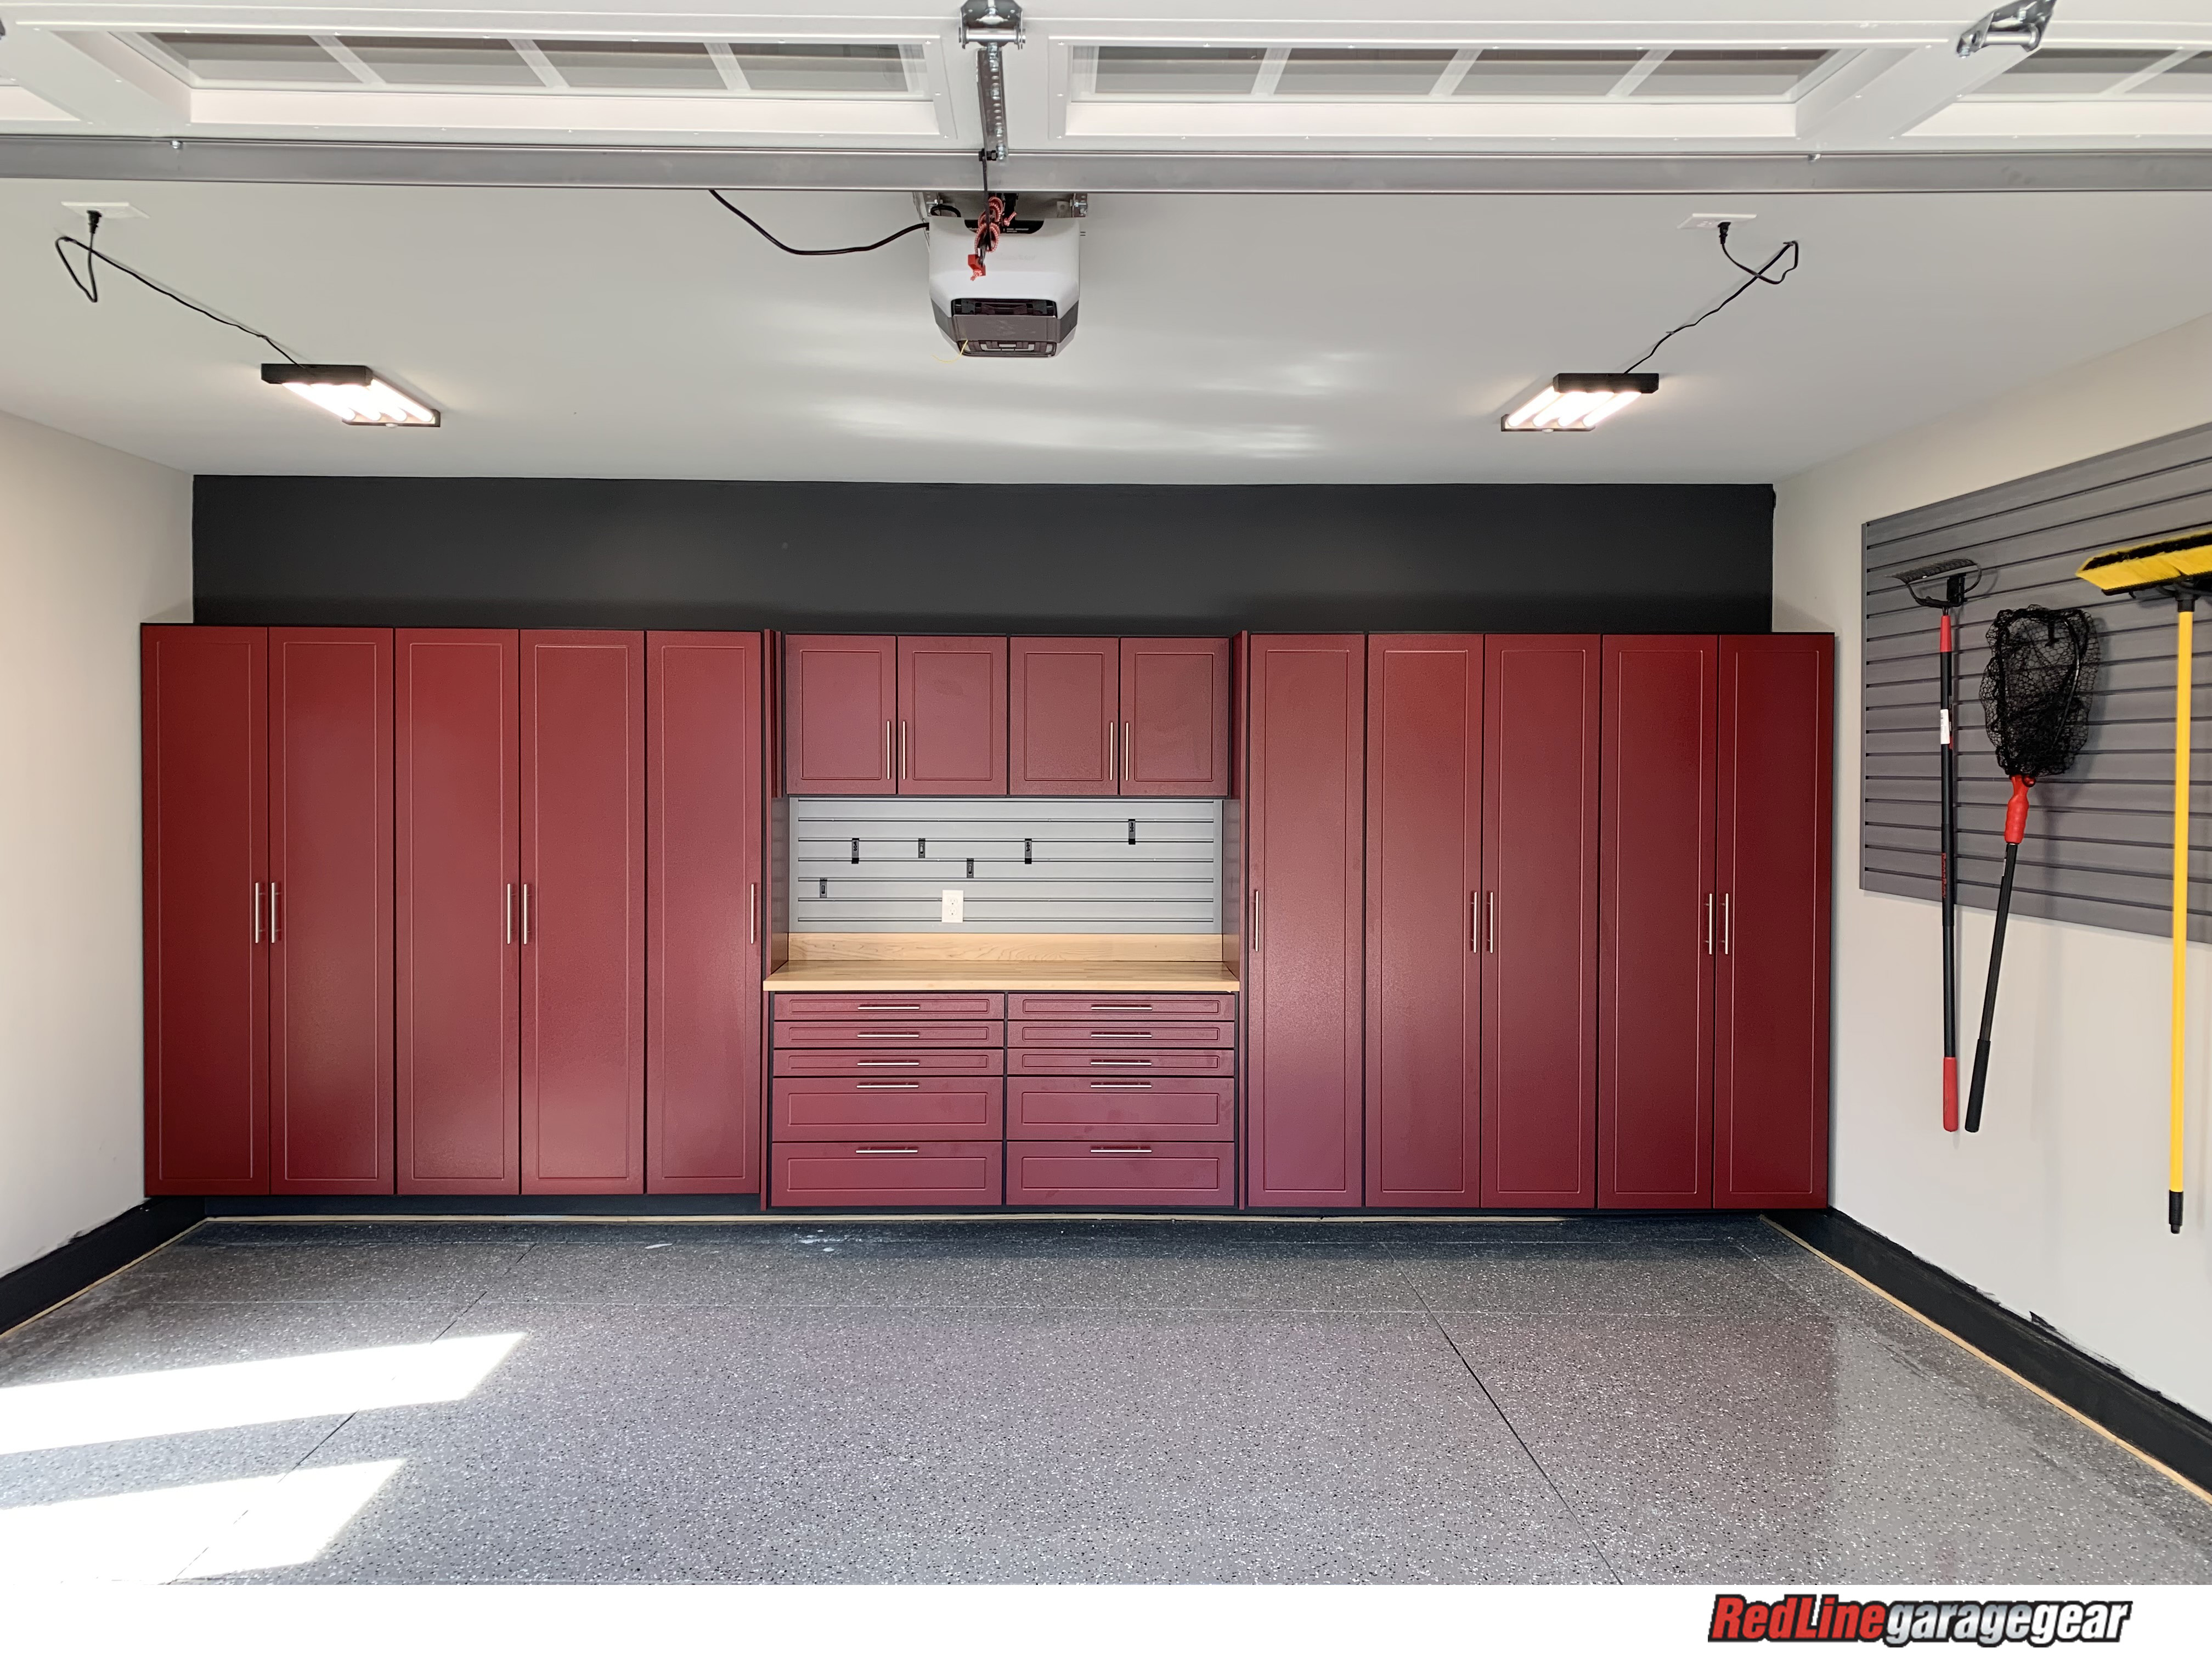 Garage storage cabinets